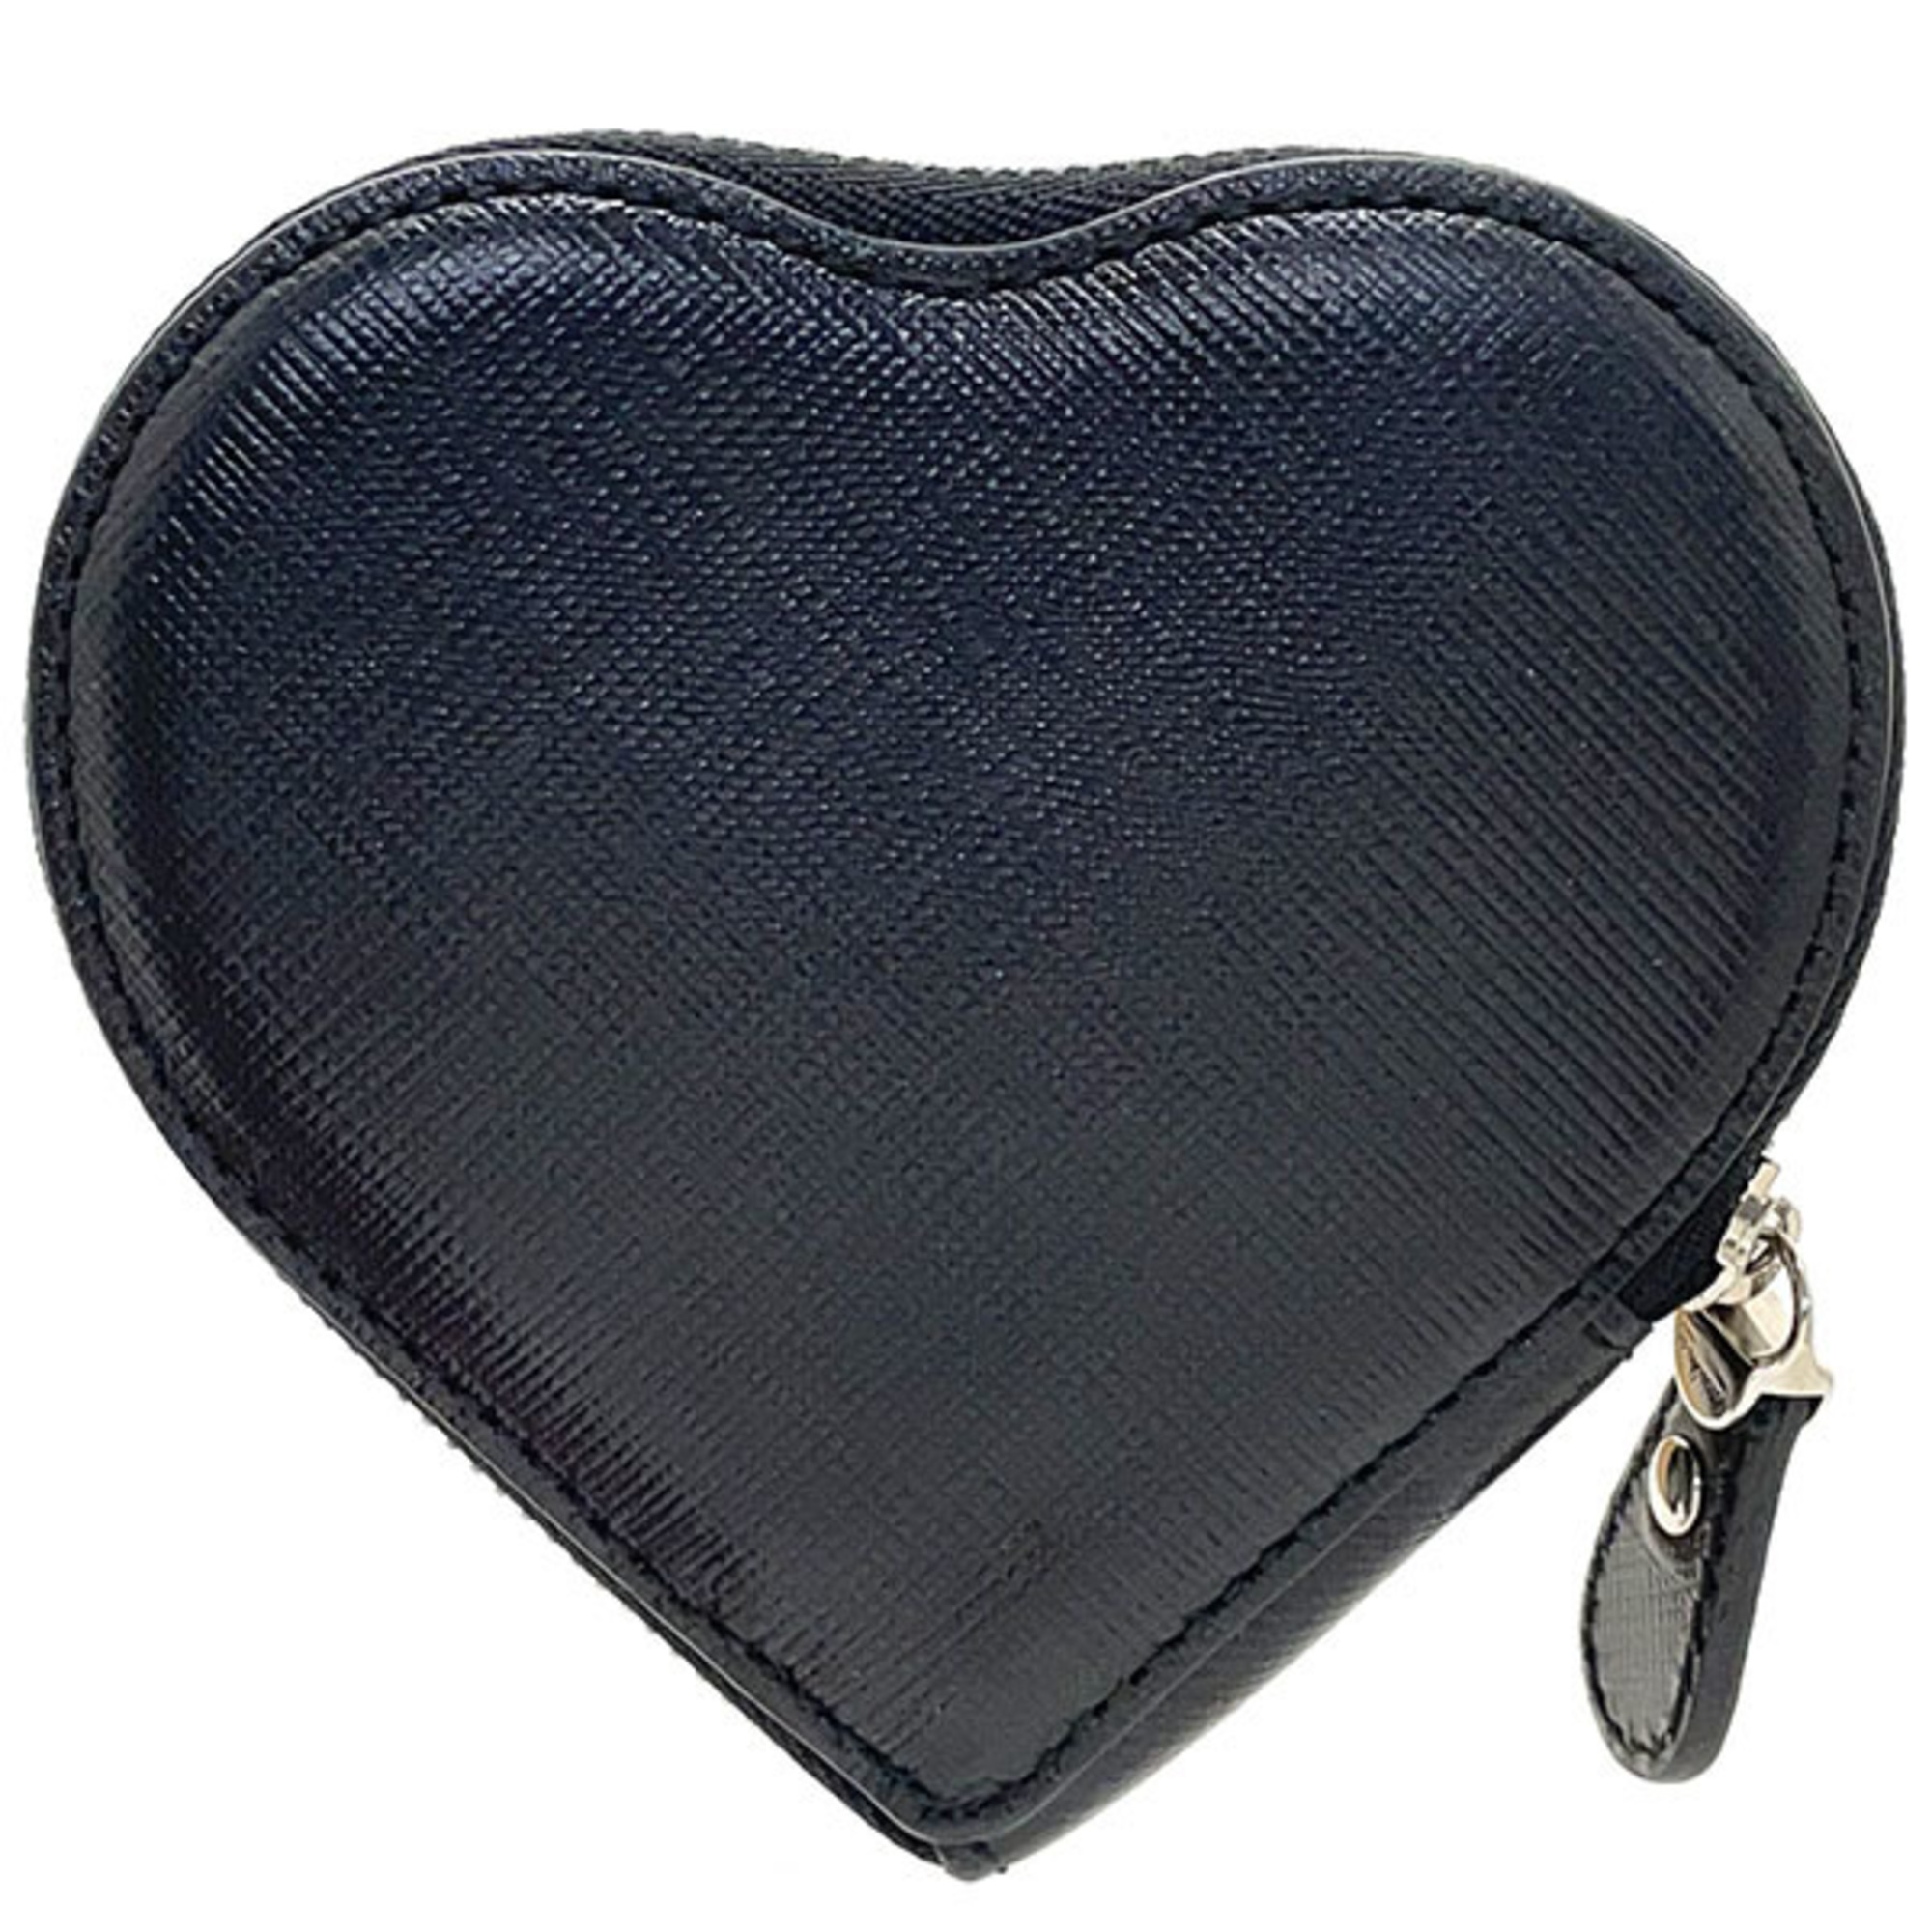 Salvatore Ferragamo Coin Case Double Gancini Heart Leather Black 22 C113 Purse SS-11136